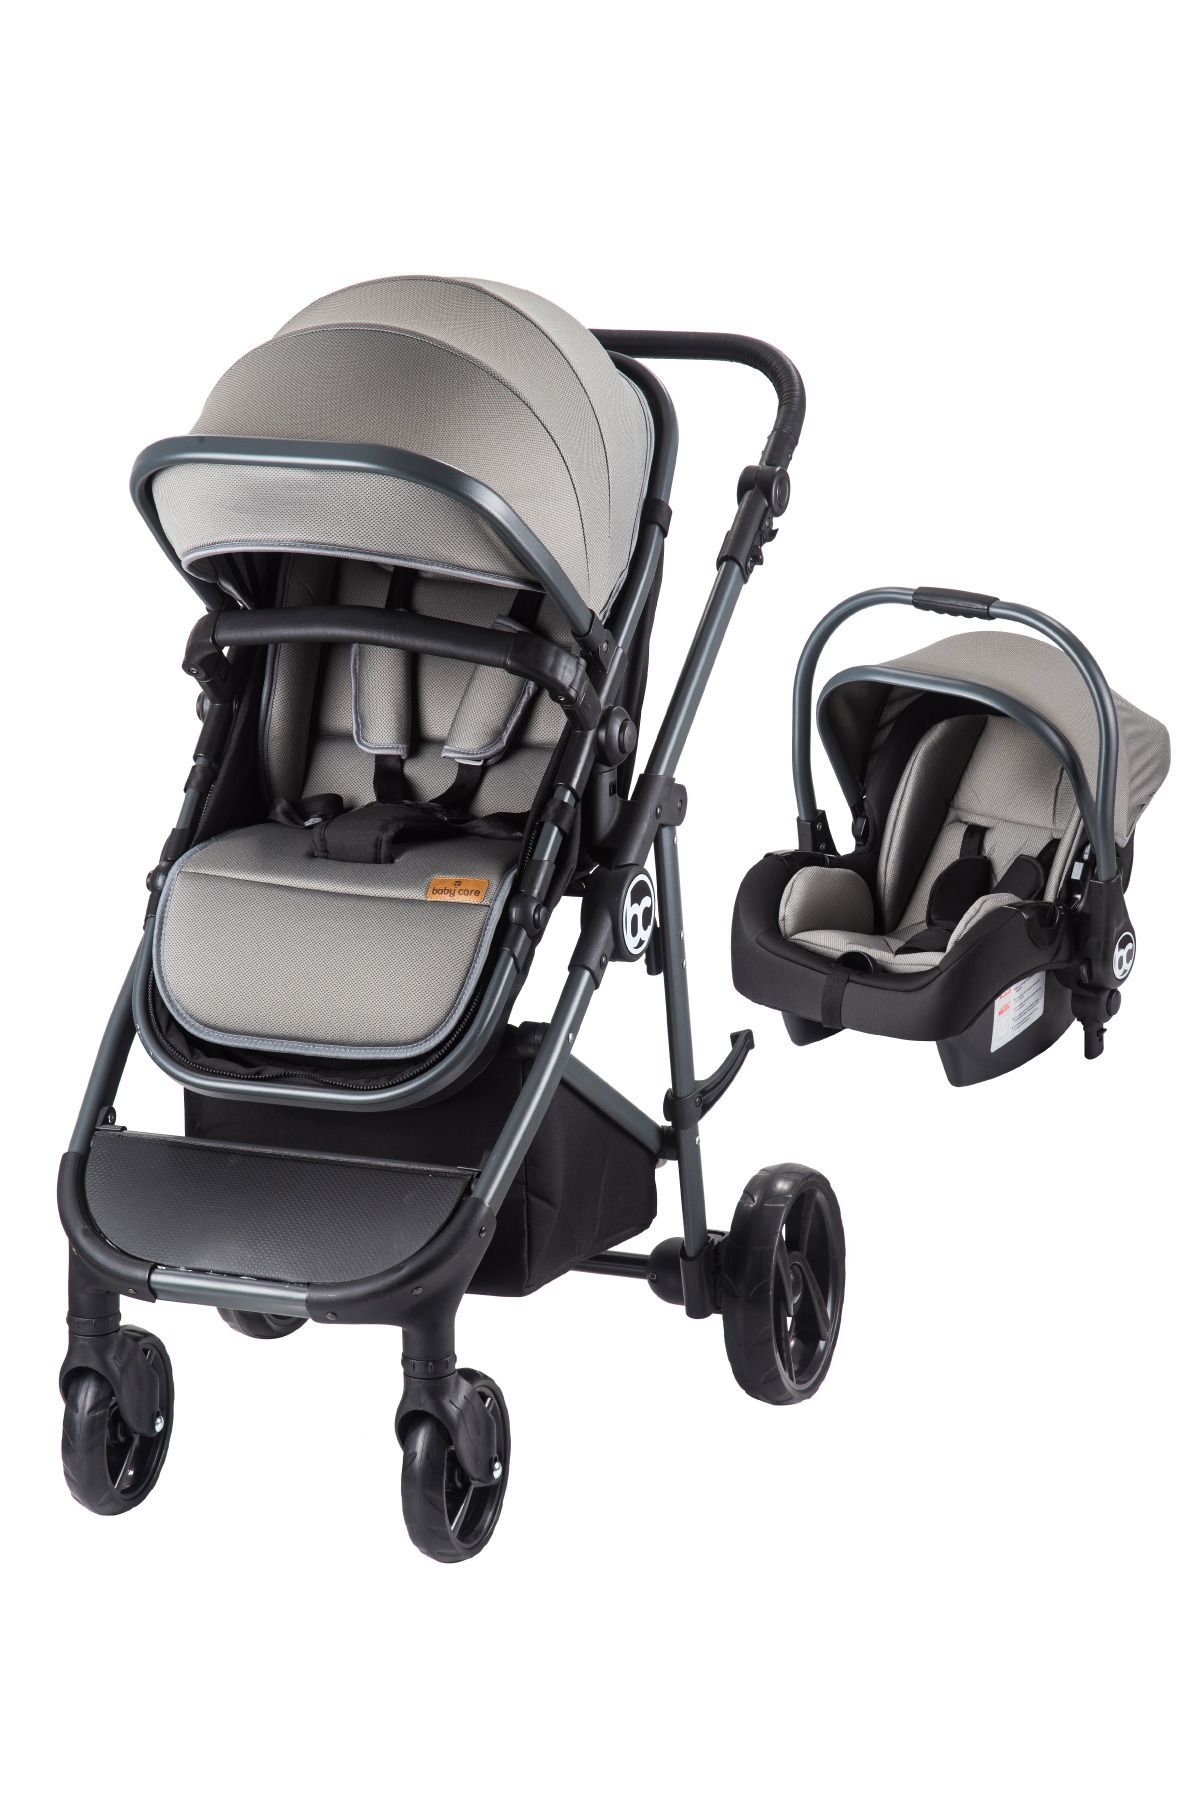 Baby Care Bc 305 - Zeta Travel Sistem Bebek Arabası ( Gri )